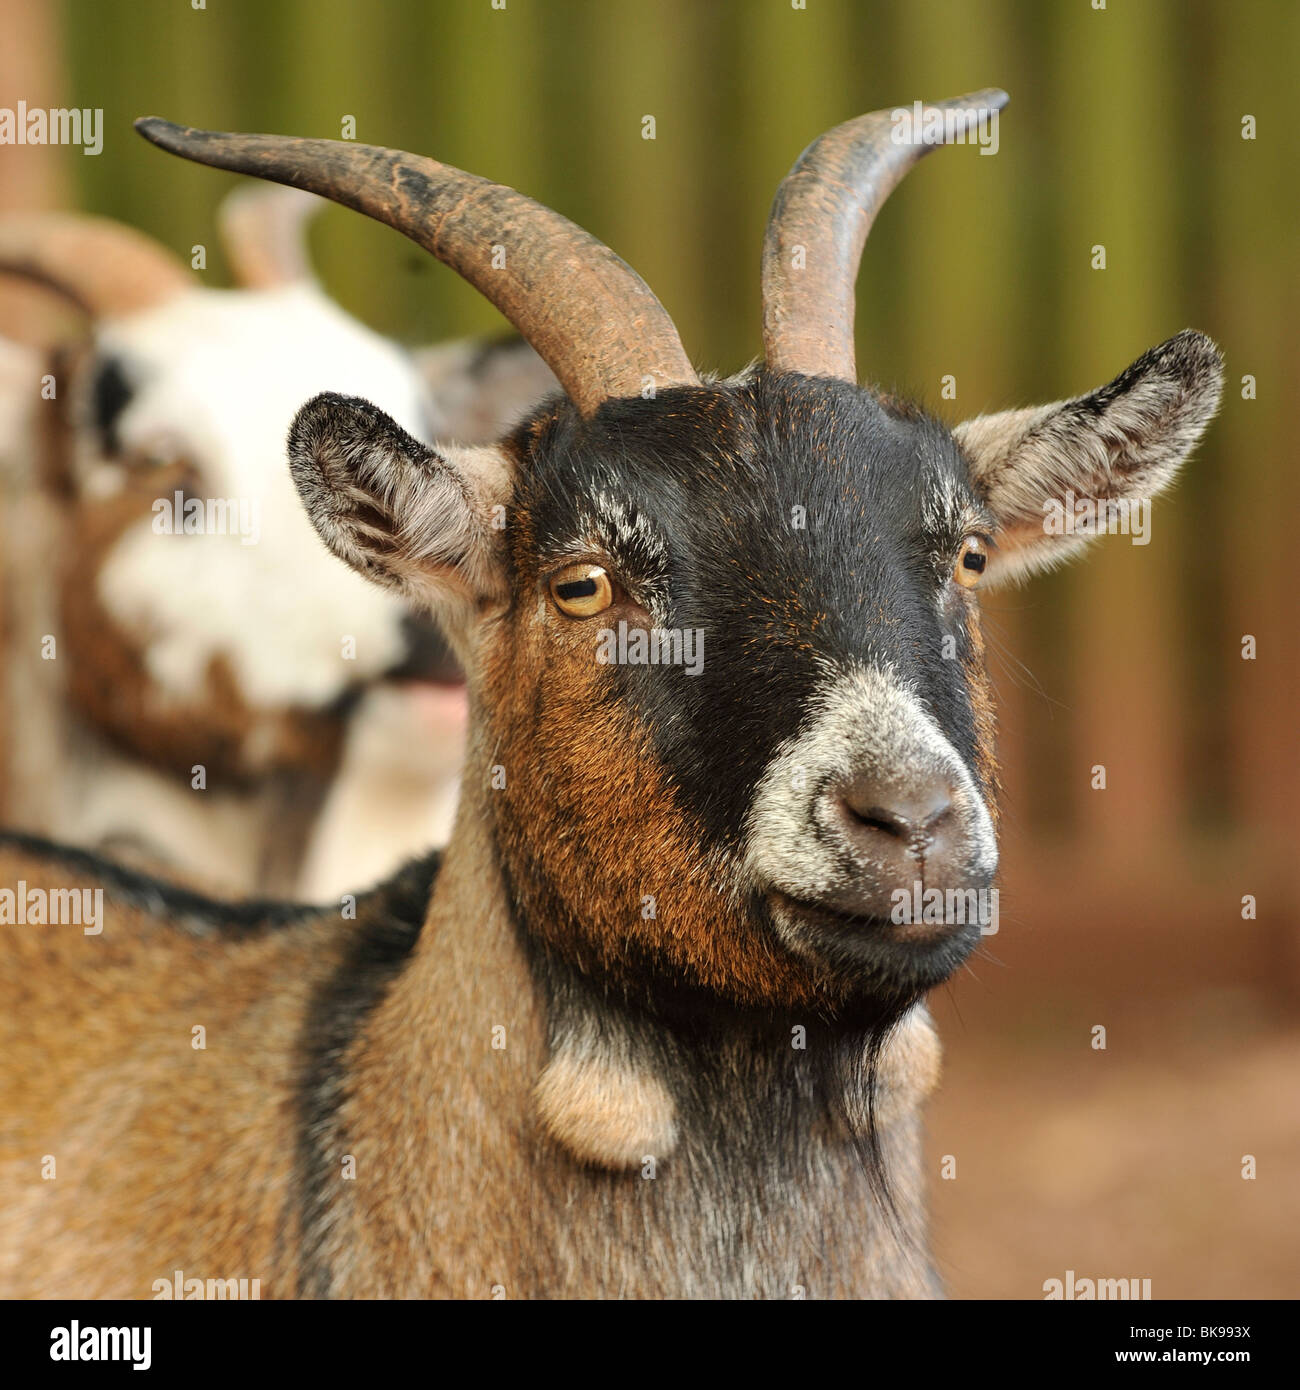 pygmy goat, UK Stock Photo